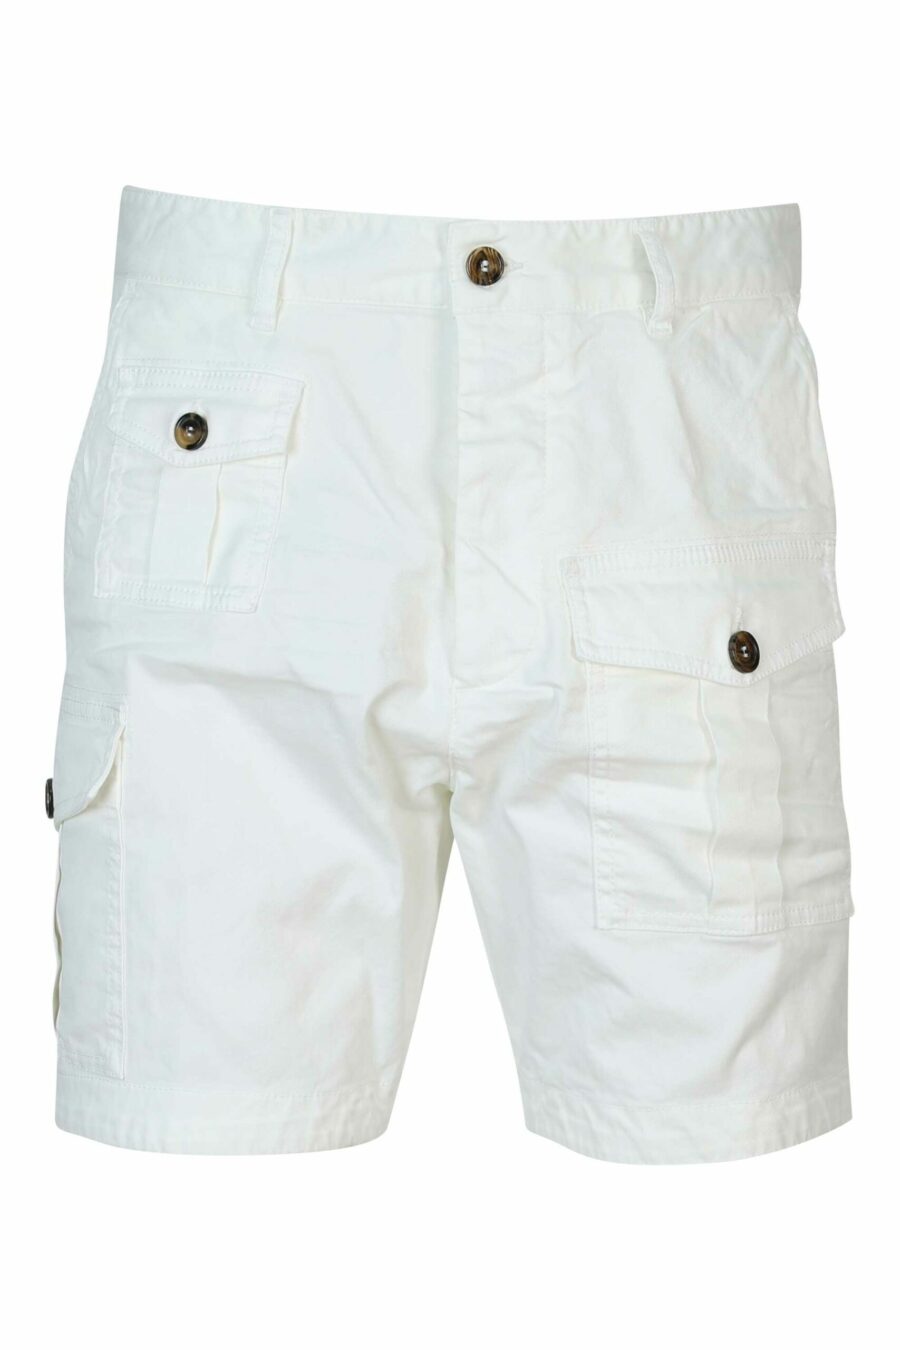 Pantalón vaquero corto blanco "sexy cargo shorts" - 8052134622513 scaled